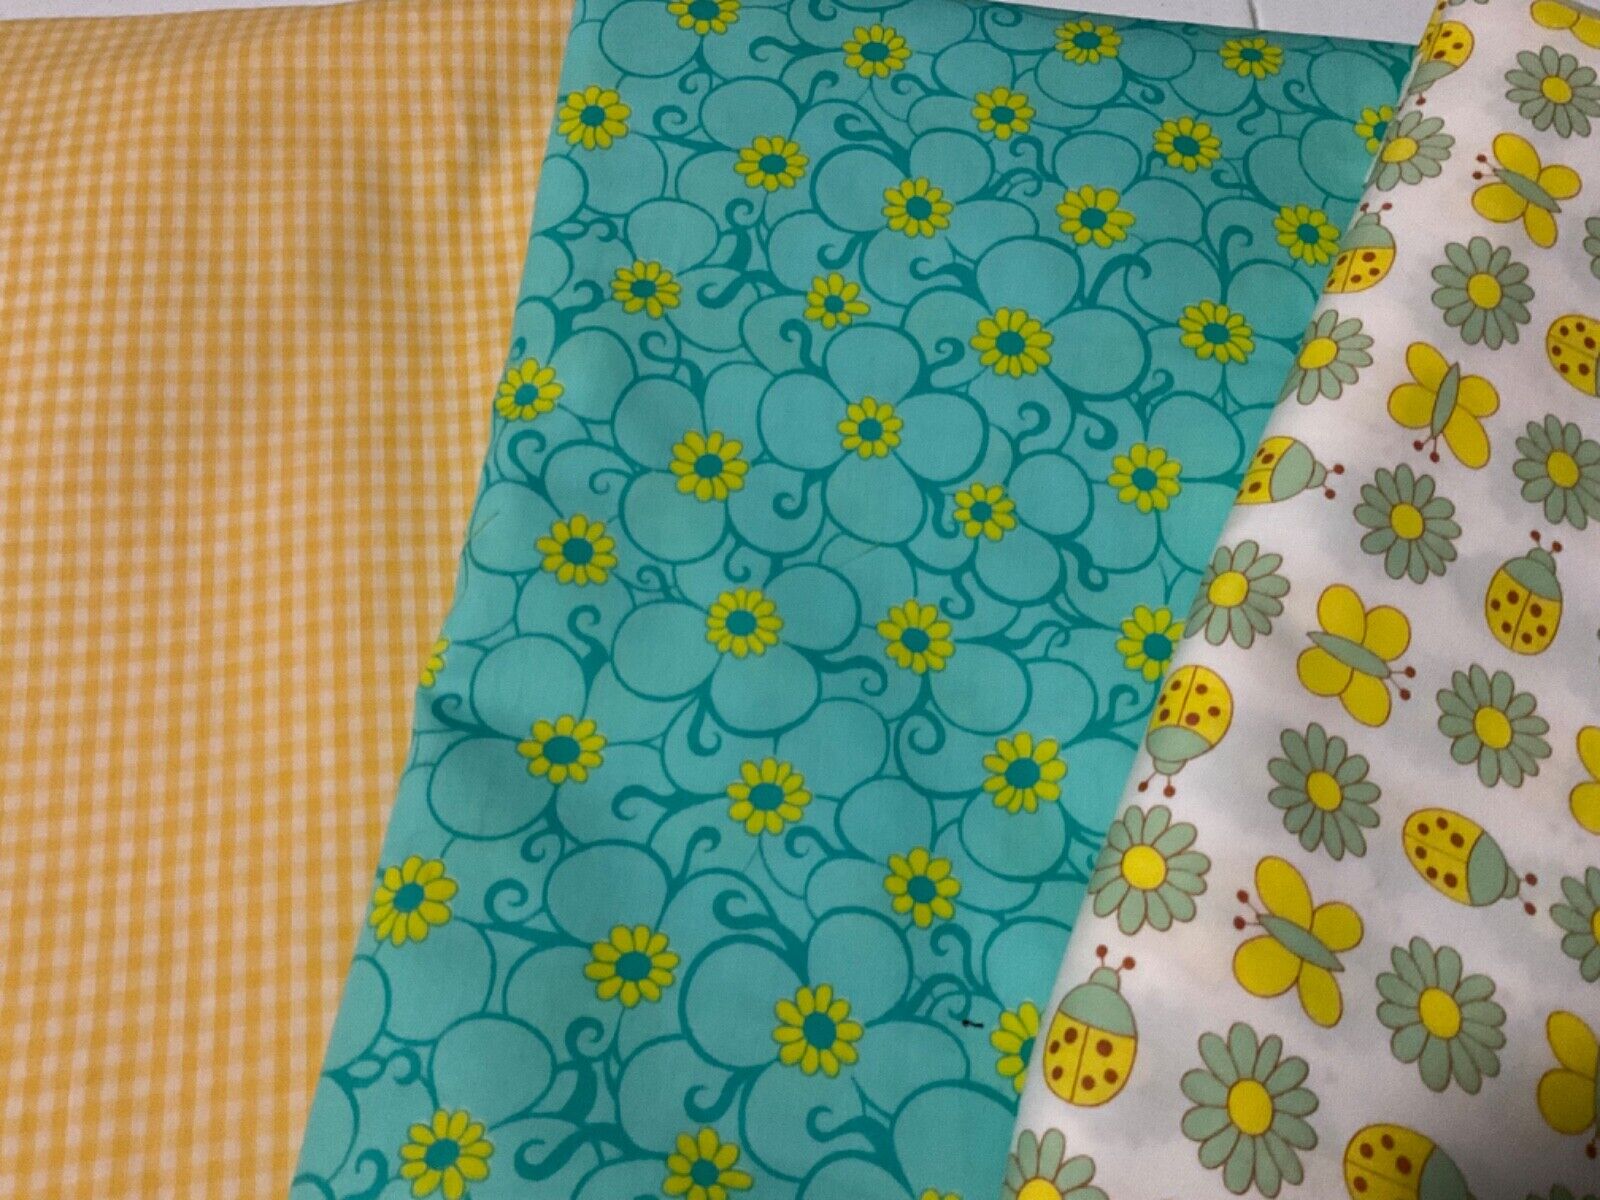 Vintage Fabric Sweet Blend of  Daisies, Butterflies, Ladybugs 9 Plus Yards